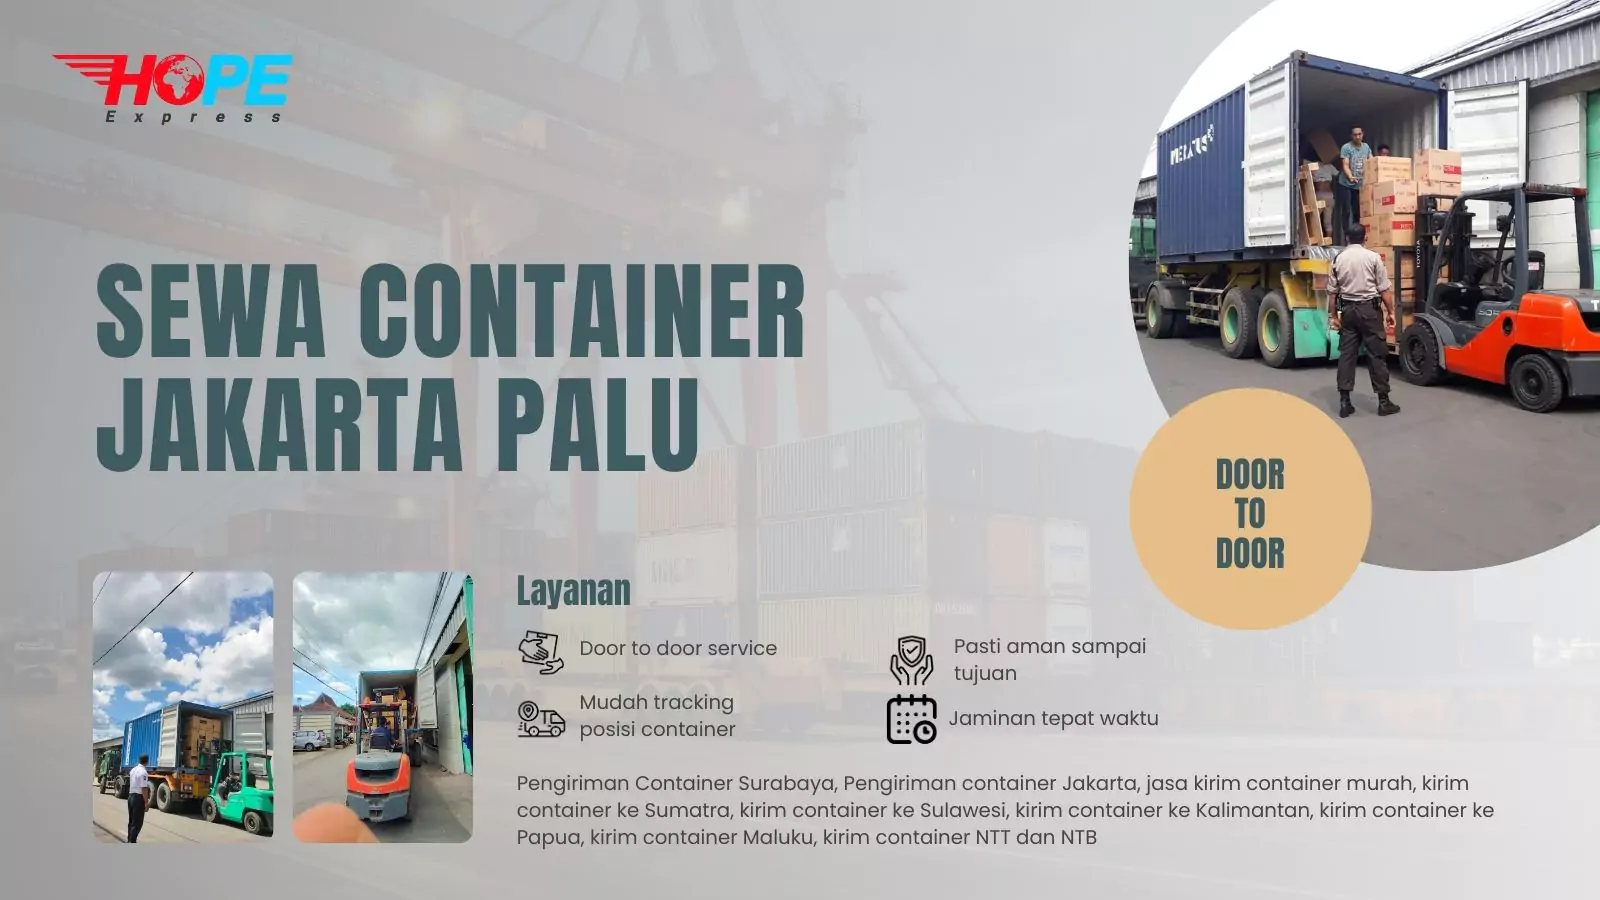 Sewa Container Jakarta Palu